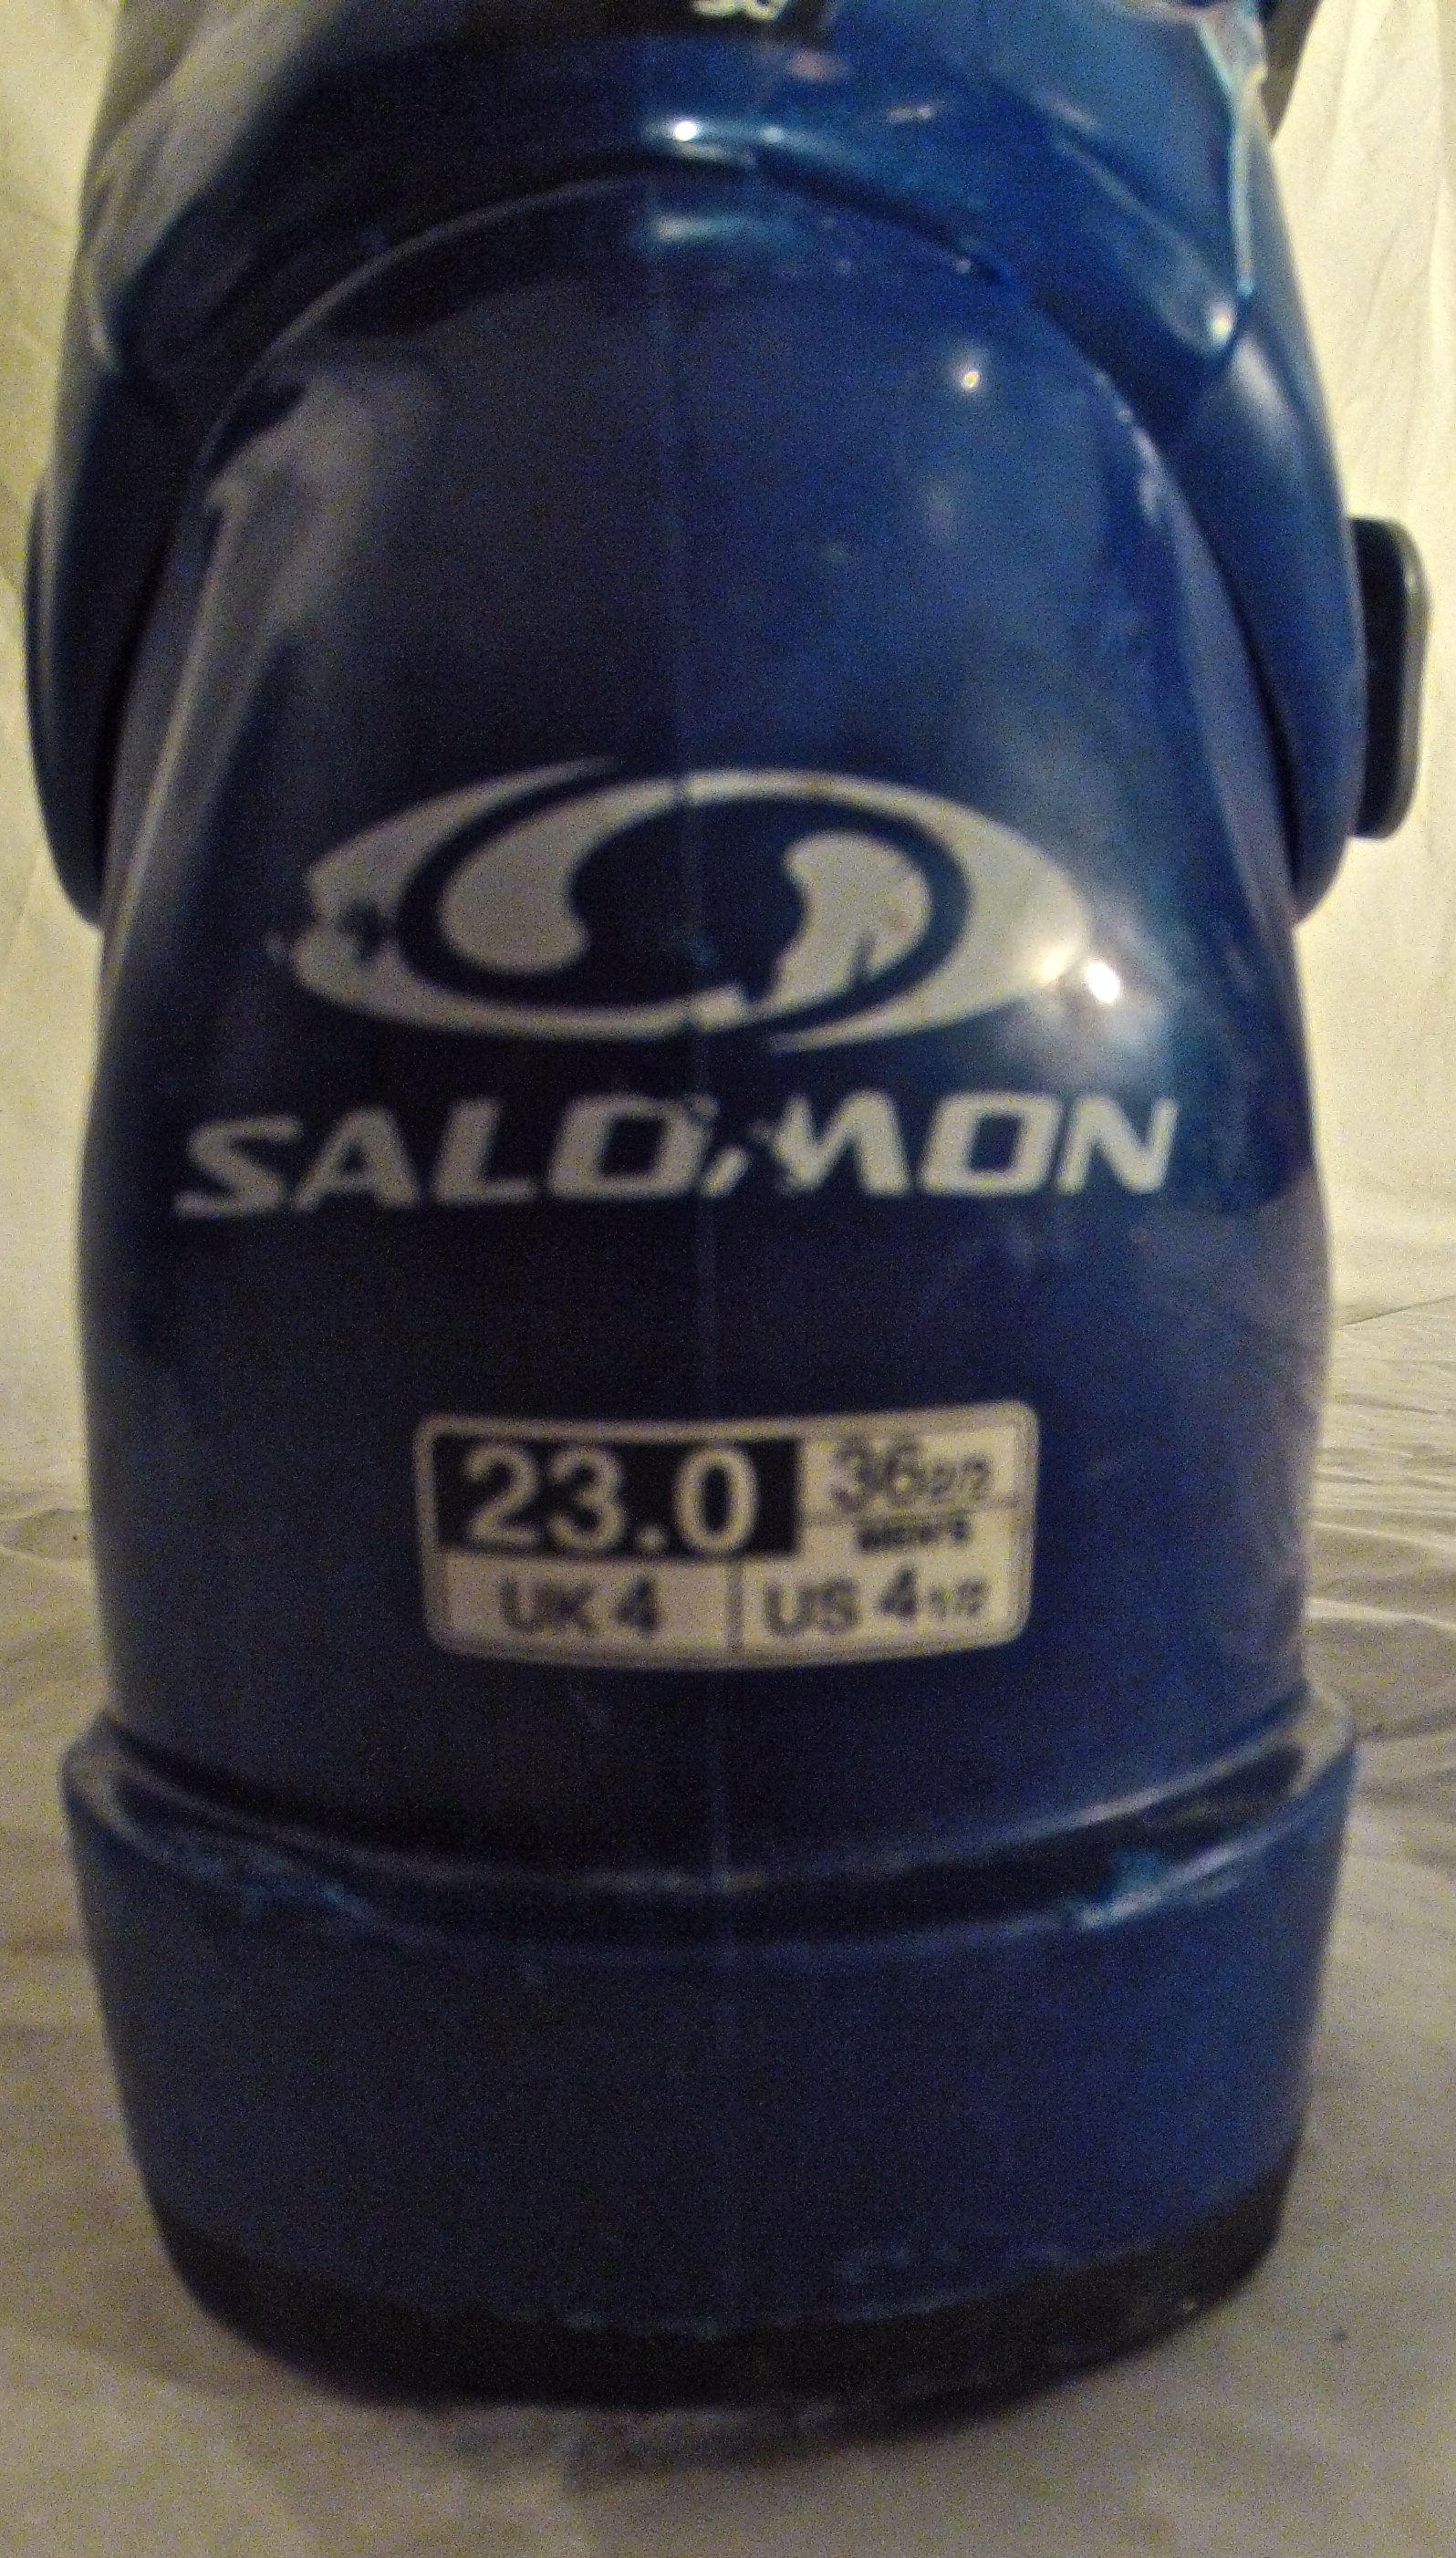 Salomon Boots For Sale